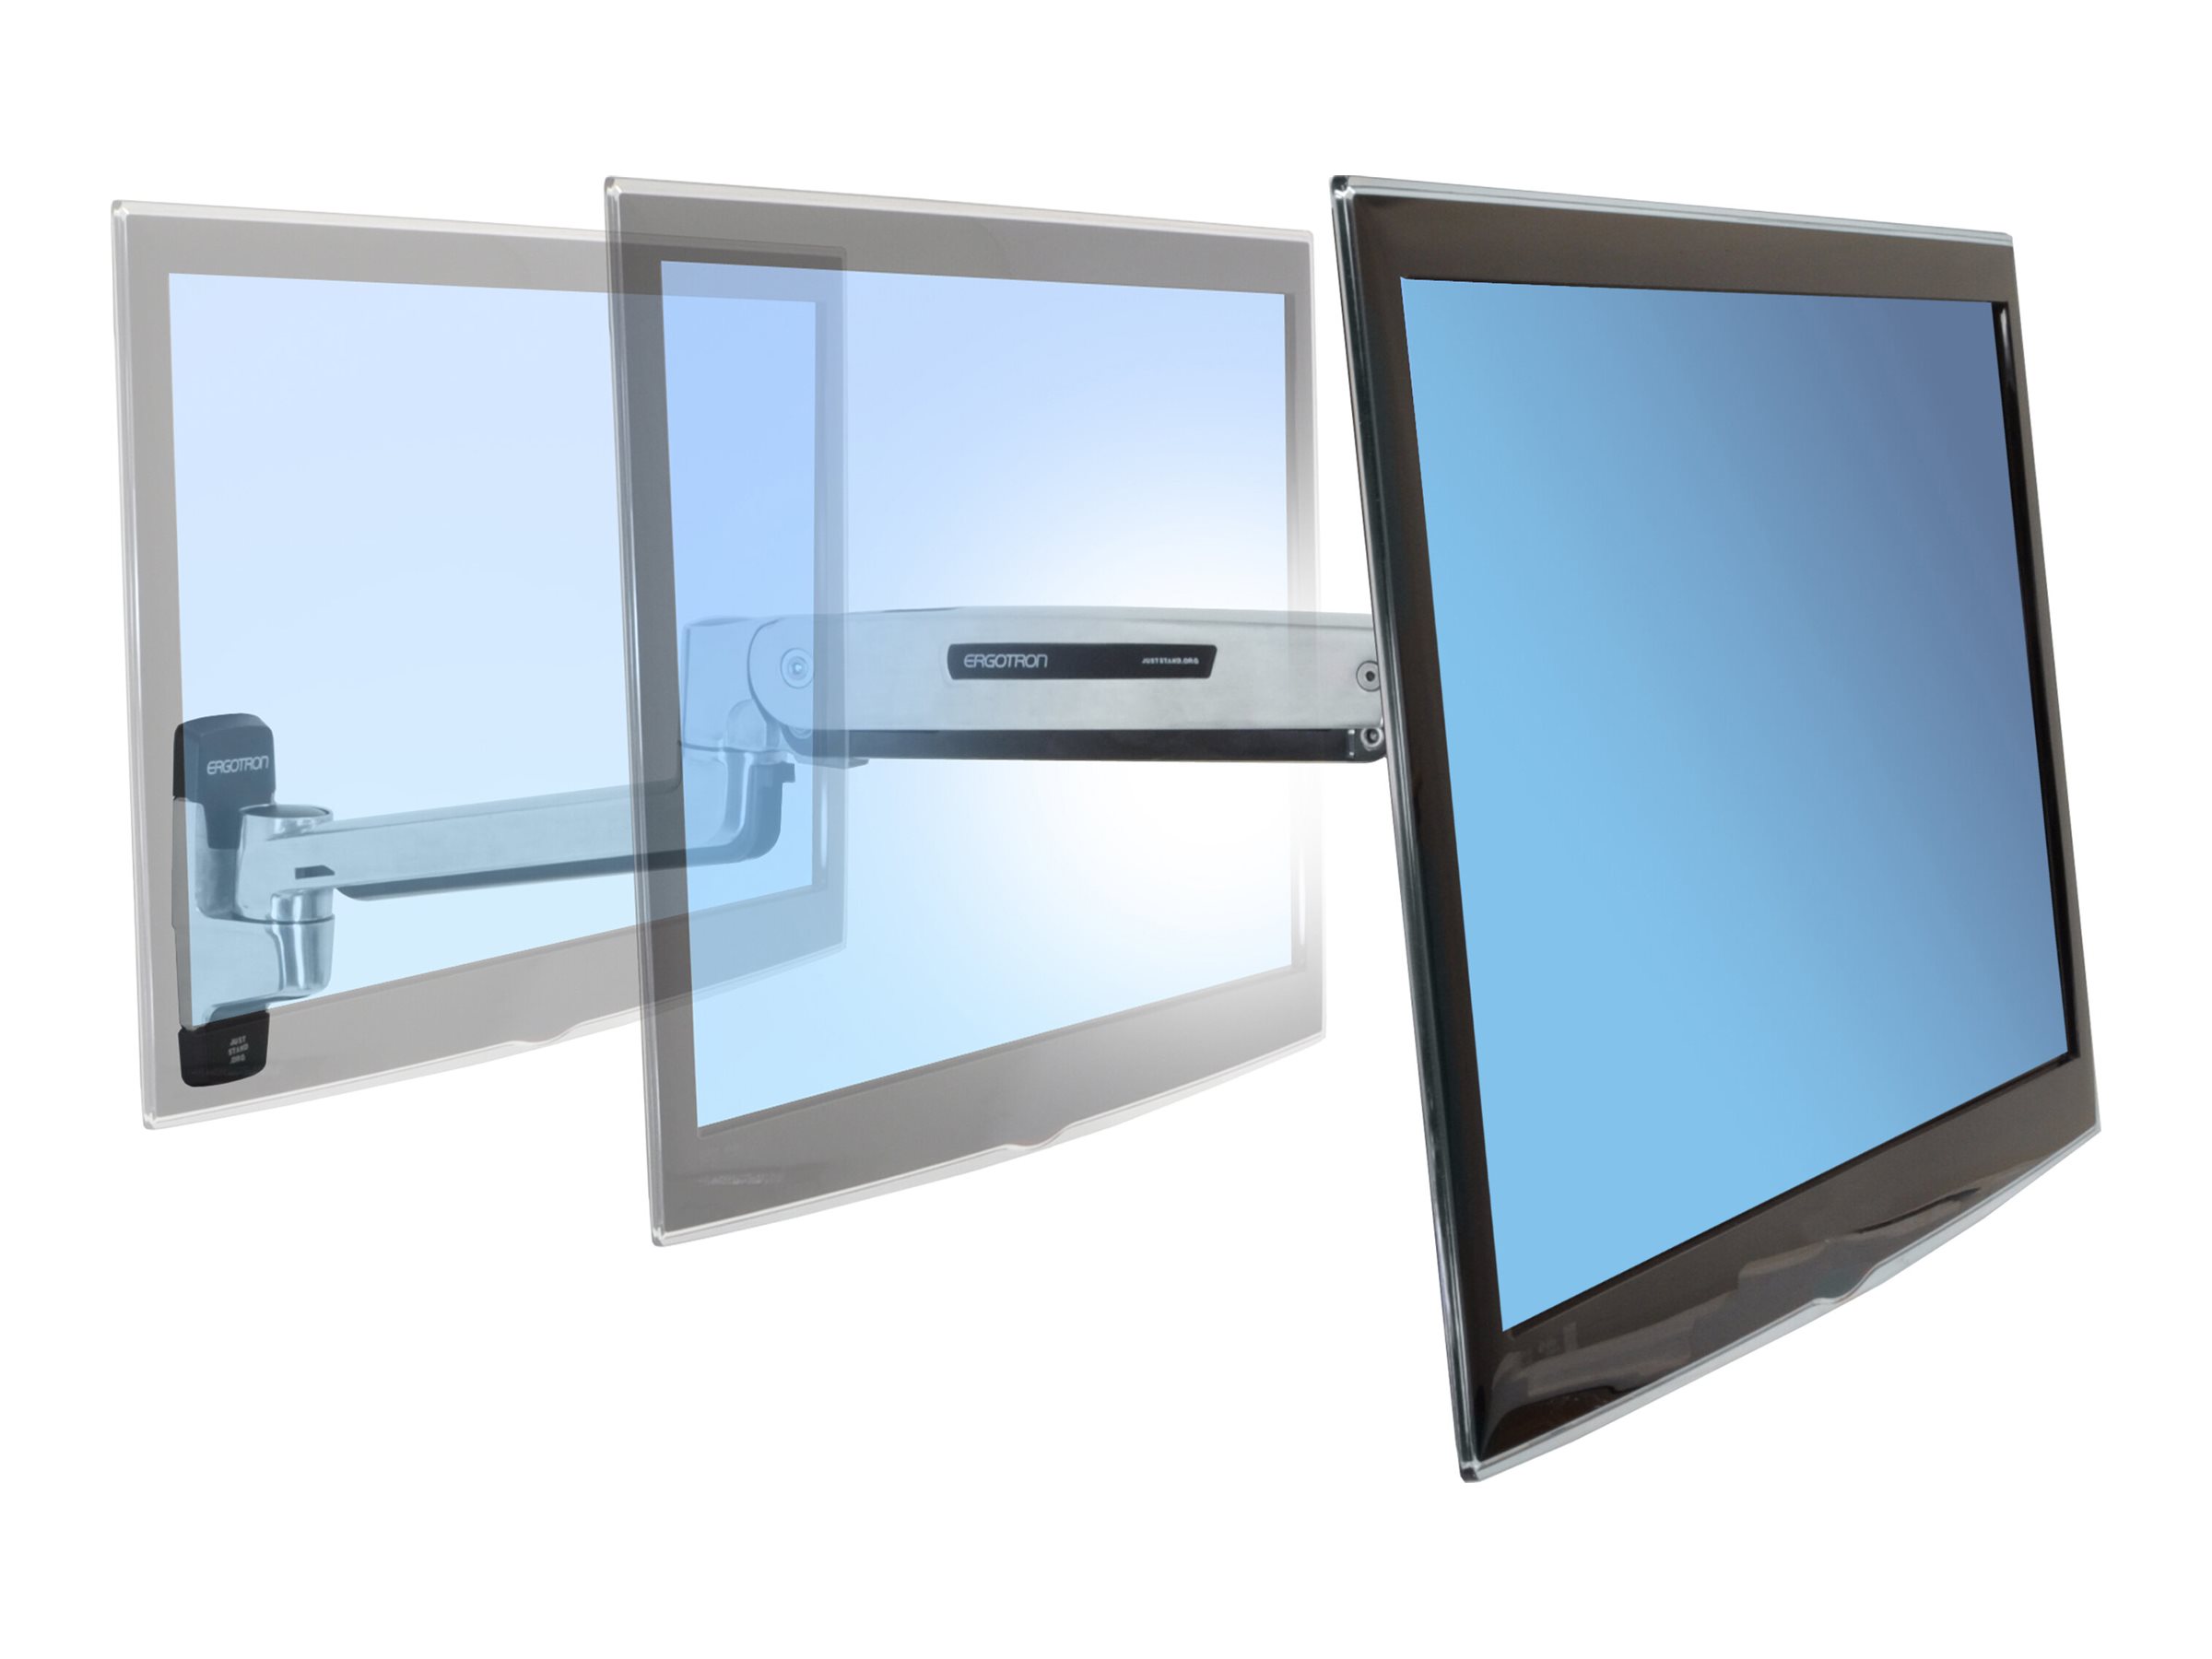 Ergotron LX - Kit de montage (adaptateur VESA, bras position assise-debout, base, extension) - pour Écran LCD - capacité 3,2 - 11,3 kg - aluminium poli - Taille d'écran : jusqu'à 42 pouces - montable sur mur - 45-353-026 - Montages pour TV et moniteur